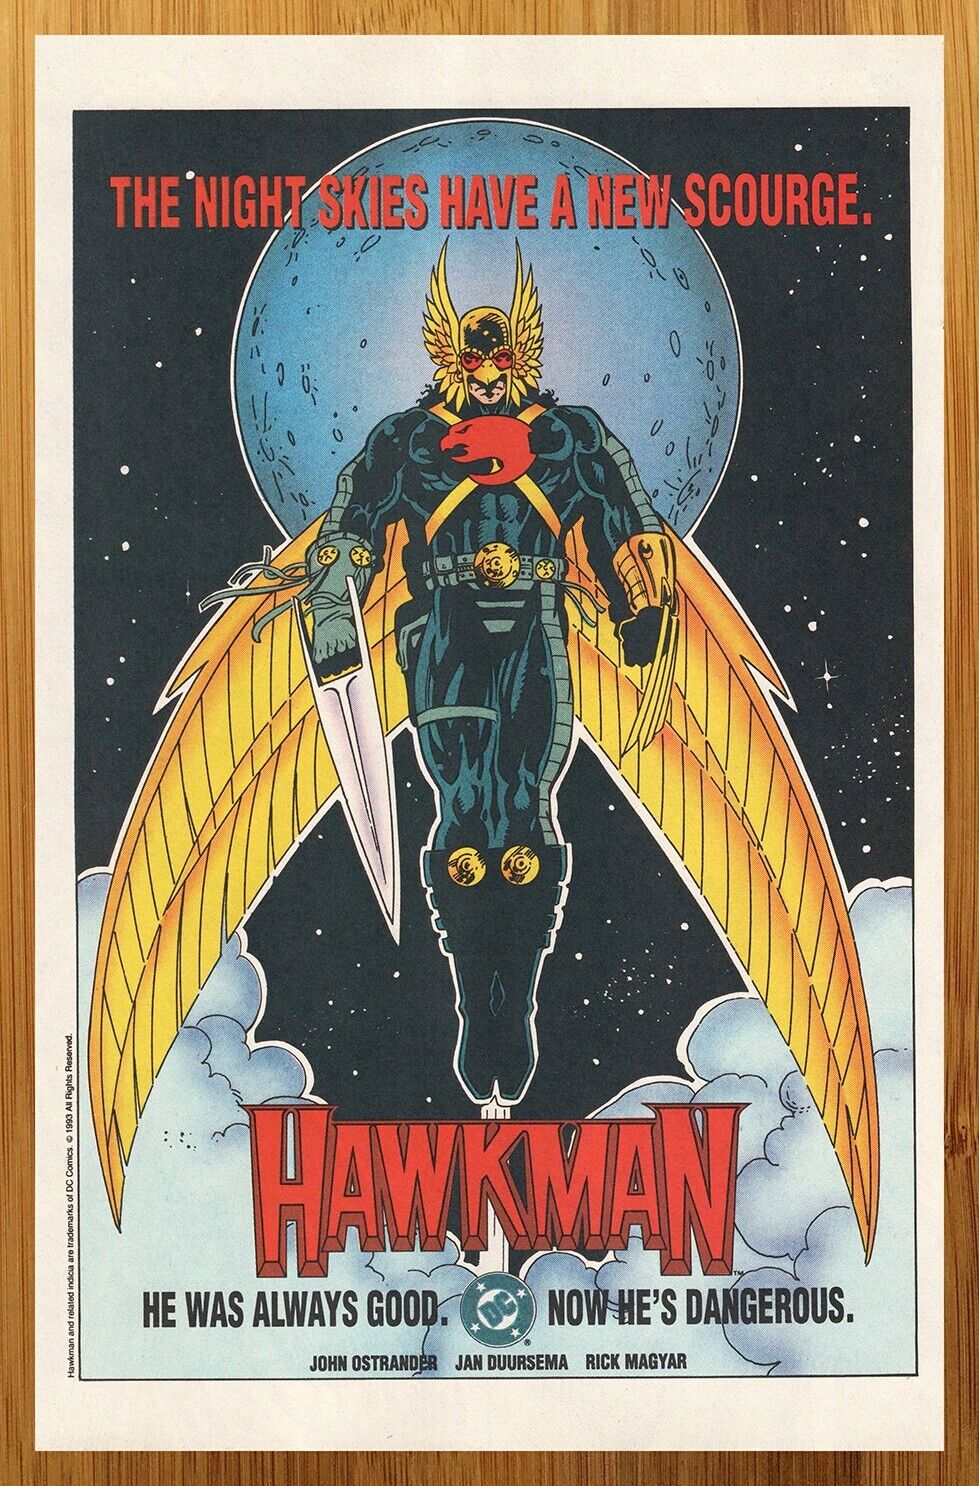 1993 DC Comics Hawkman Vintage Print Ad/Poster Jan Duursema Retro Promo Art 90s